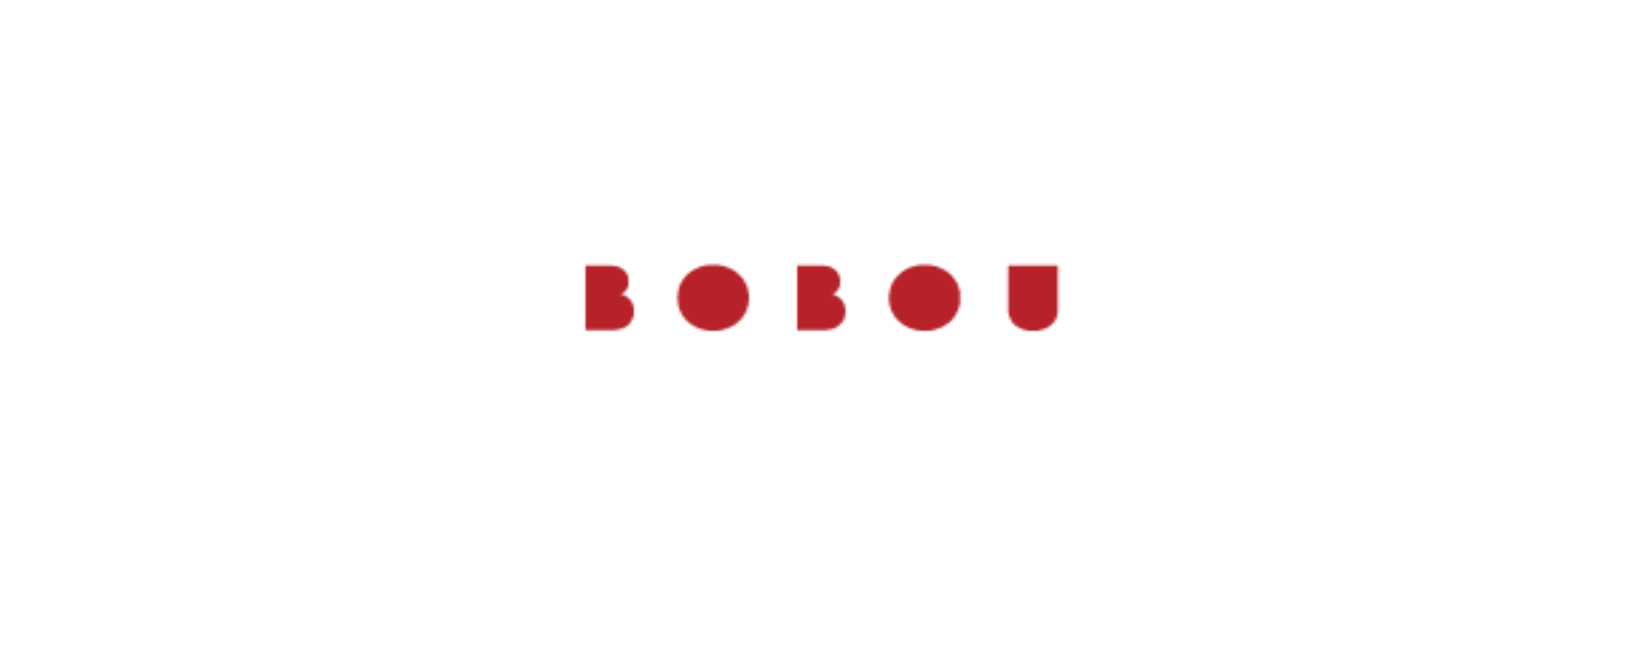 BOBOU Discount Codes 2022